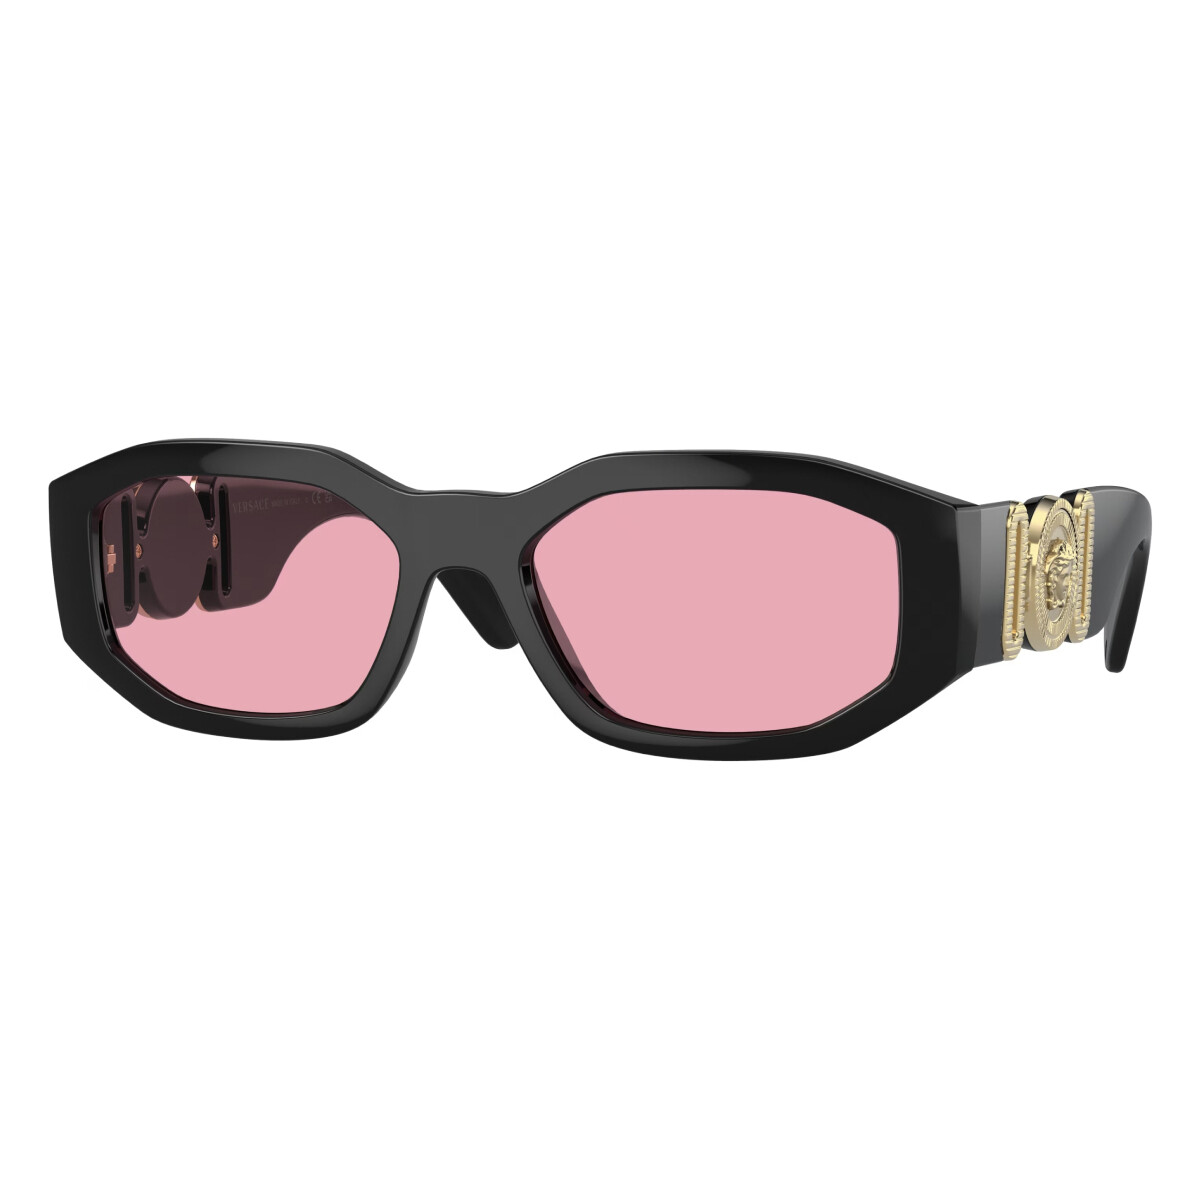 Orologi & Gioielli Occhiali da sole Versace VE4361 Occhiali da sole, Nero/Rosa, 53 mm Nero